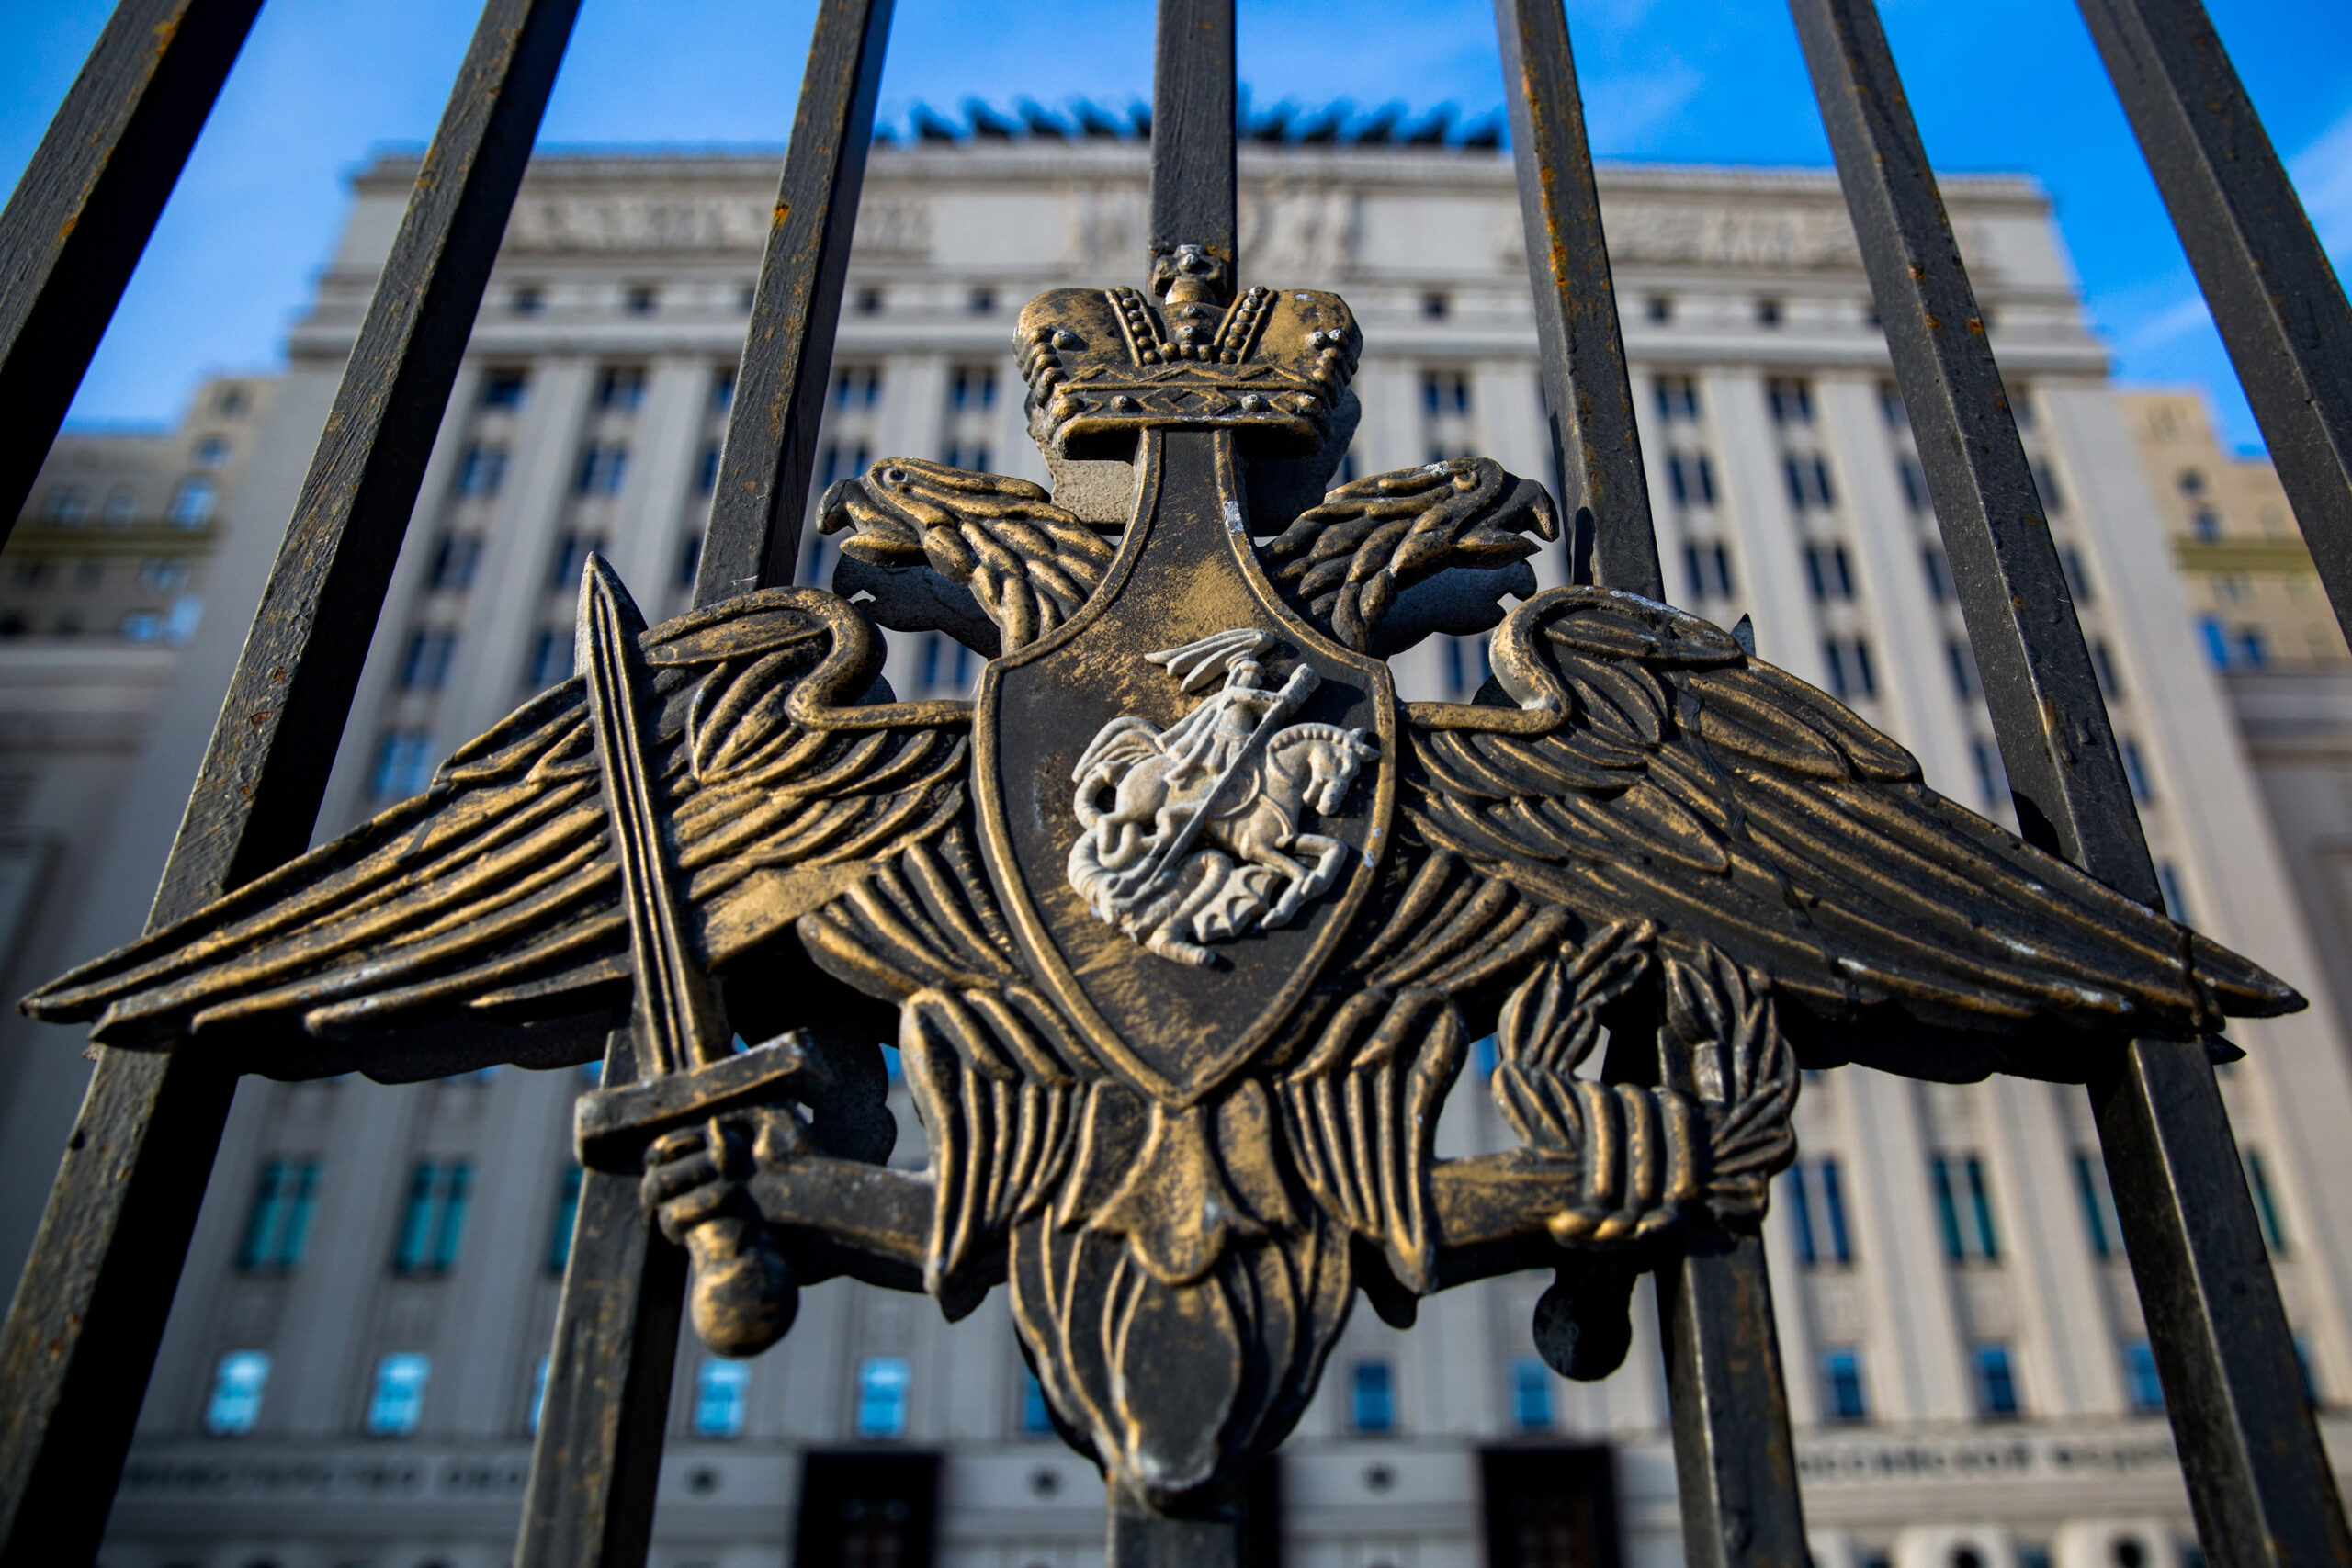 ՌԴ ՊՆ-ն սադրանք է անվանել Լեհաստանում ռուսական հրթիռների ընկնելու մասին հայտարարությունը